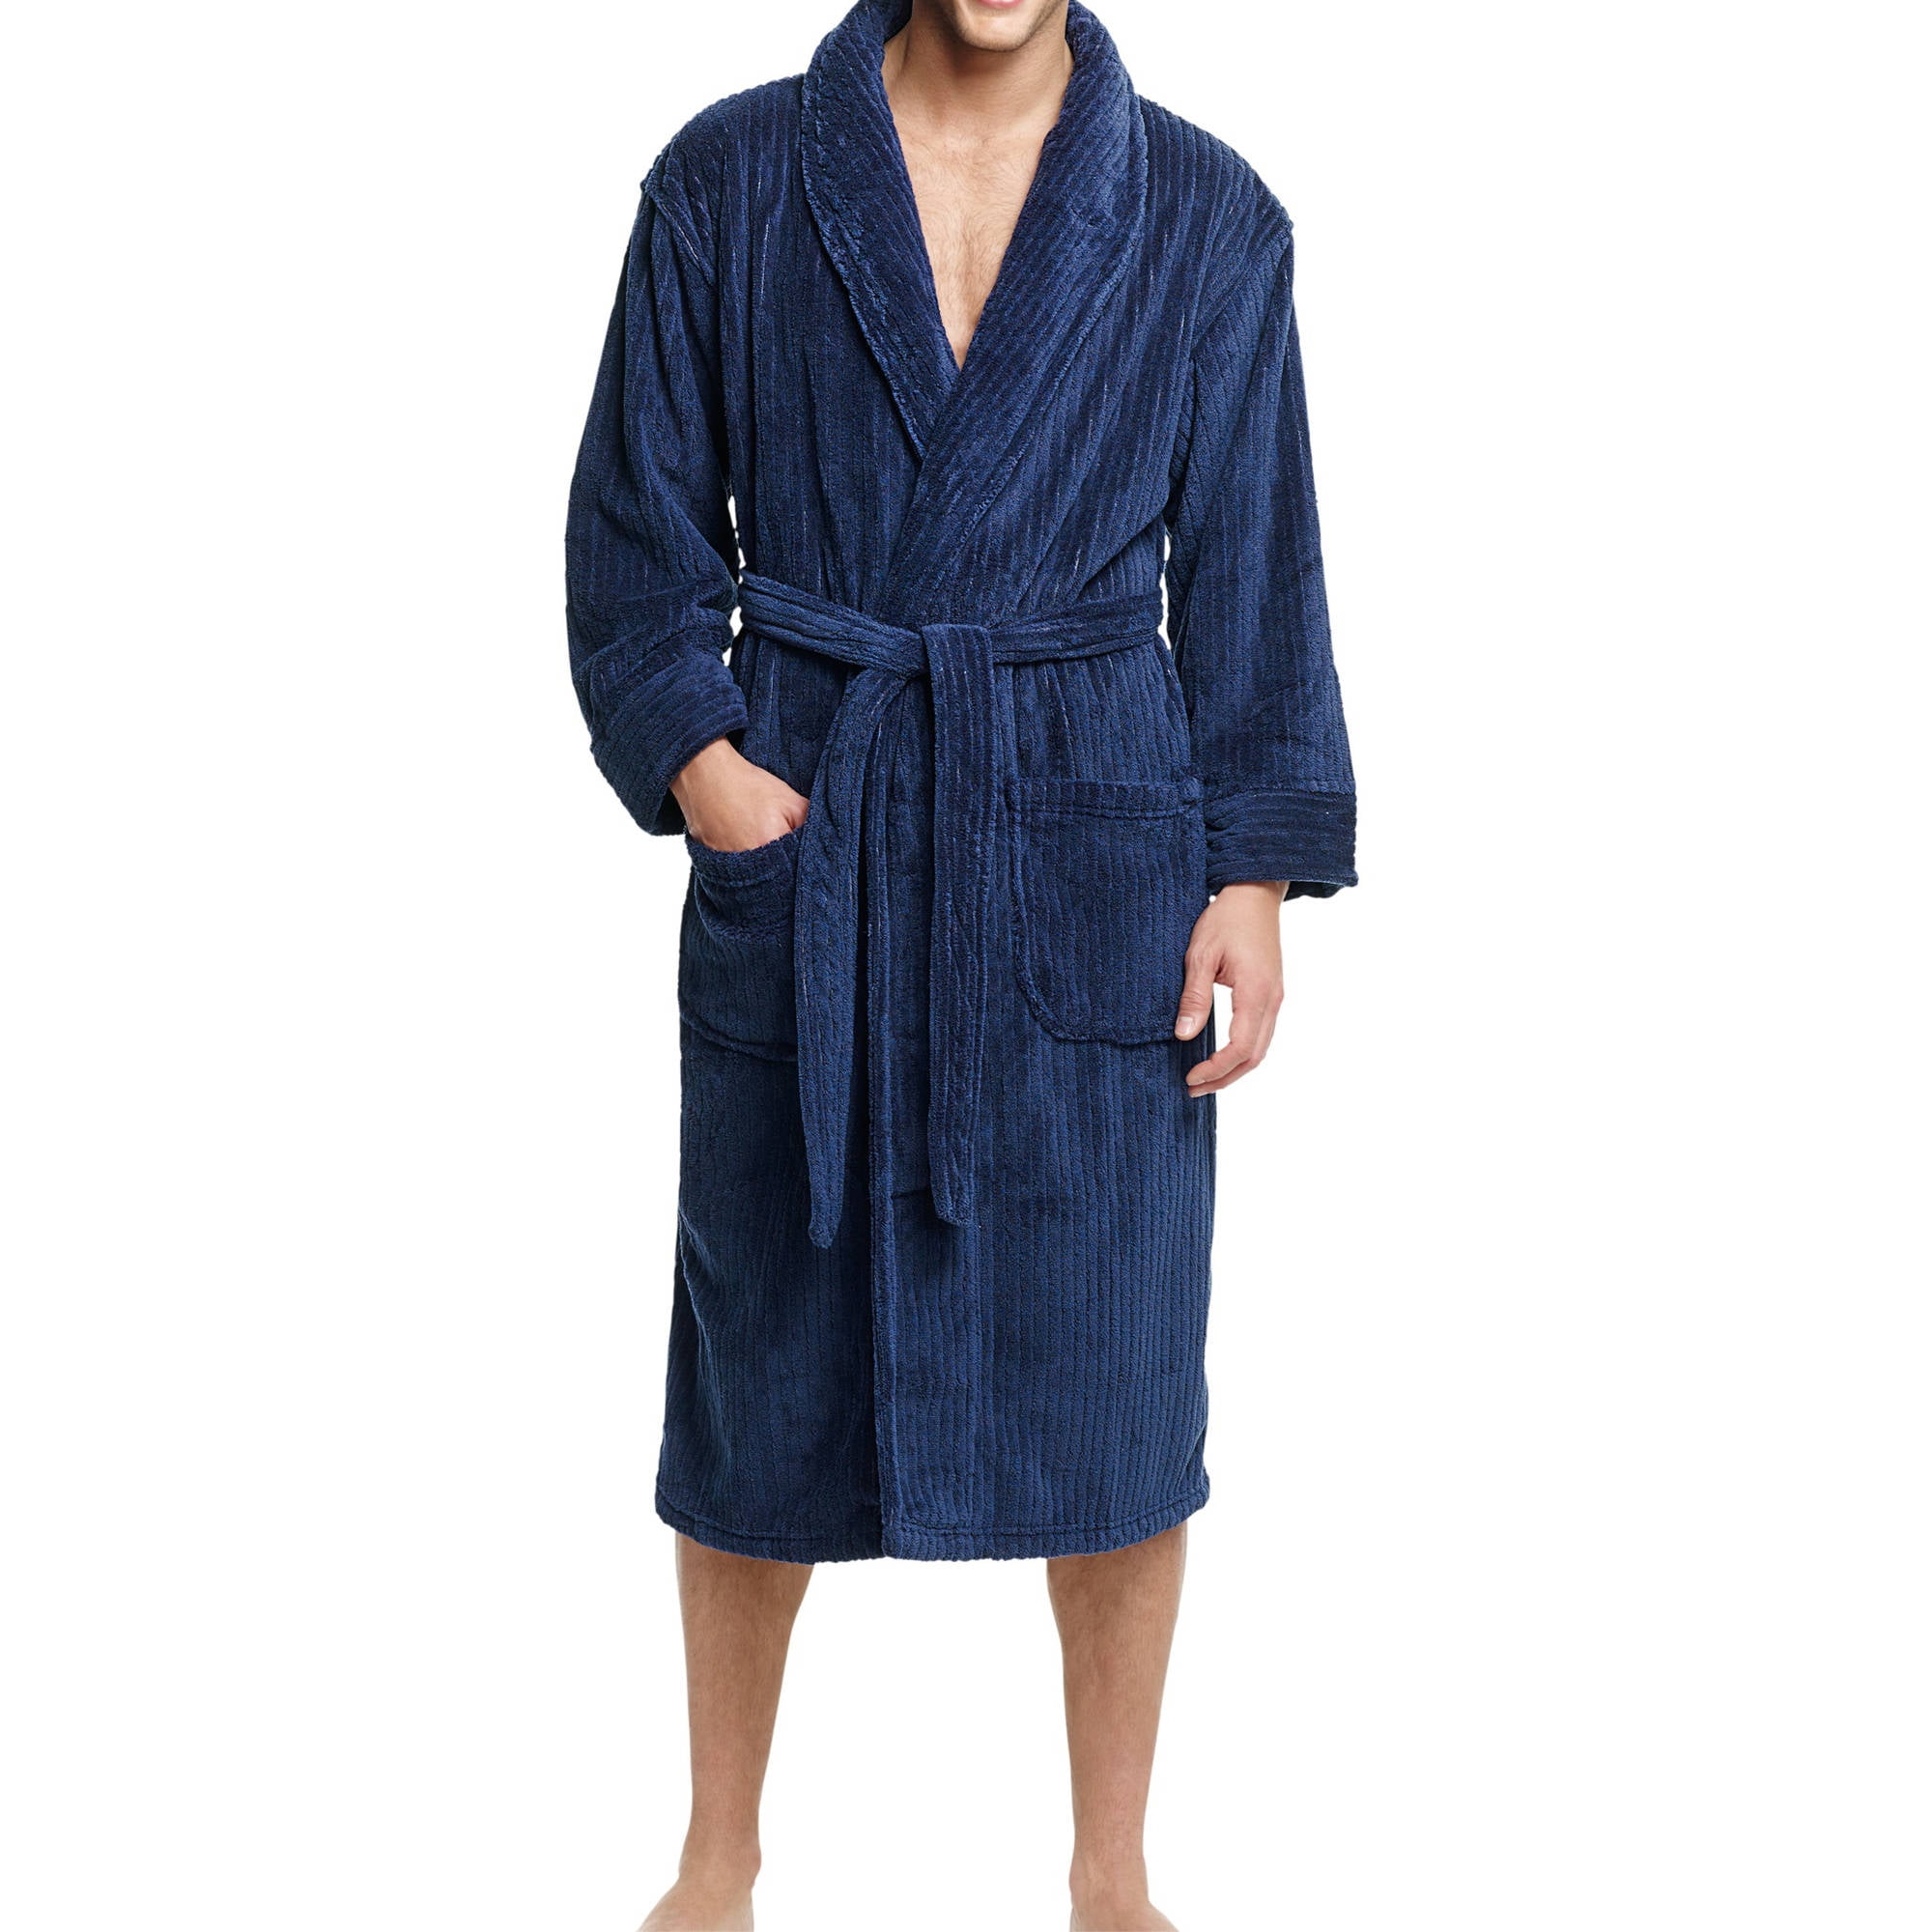 Tommy Bahama Men's Soft Plush Robe Navy Size L/XL